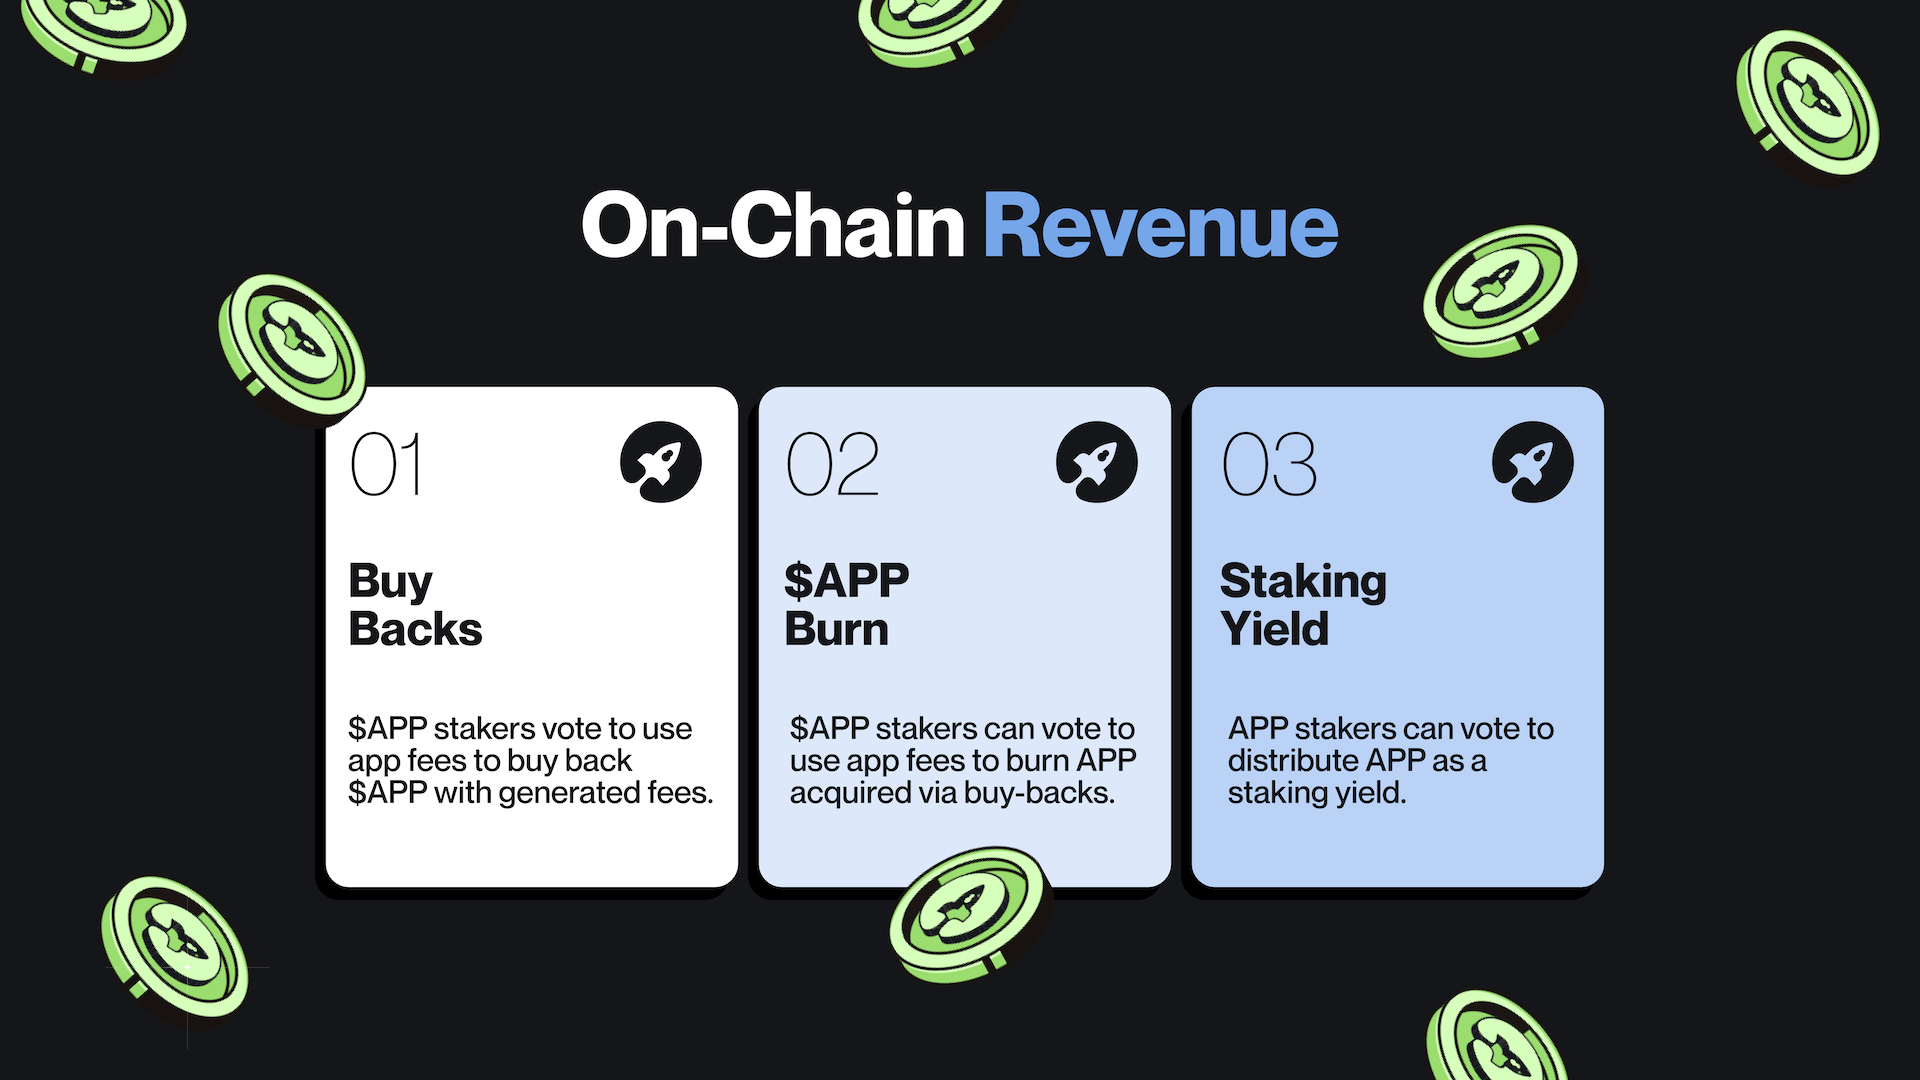 On-Chain Revenue